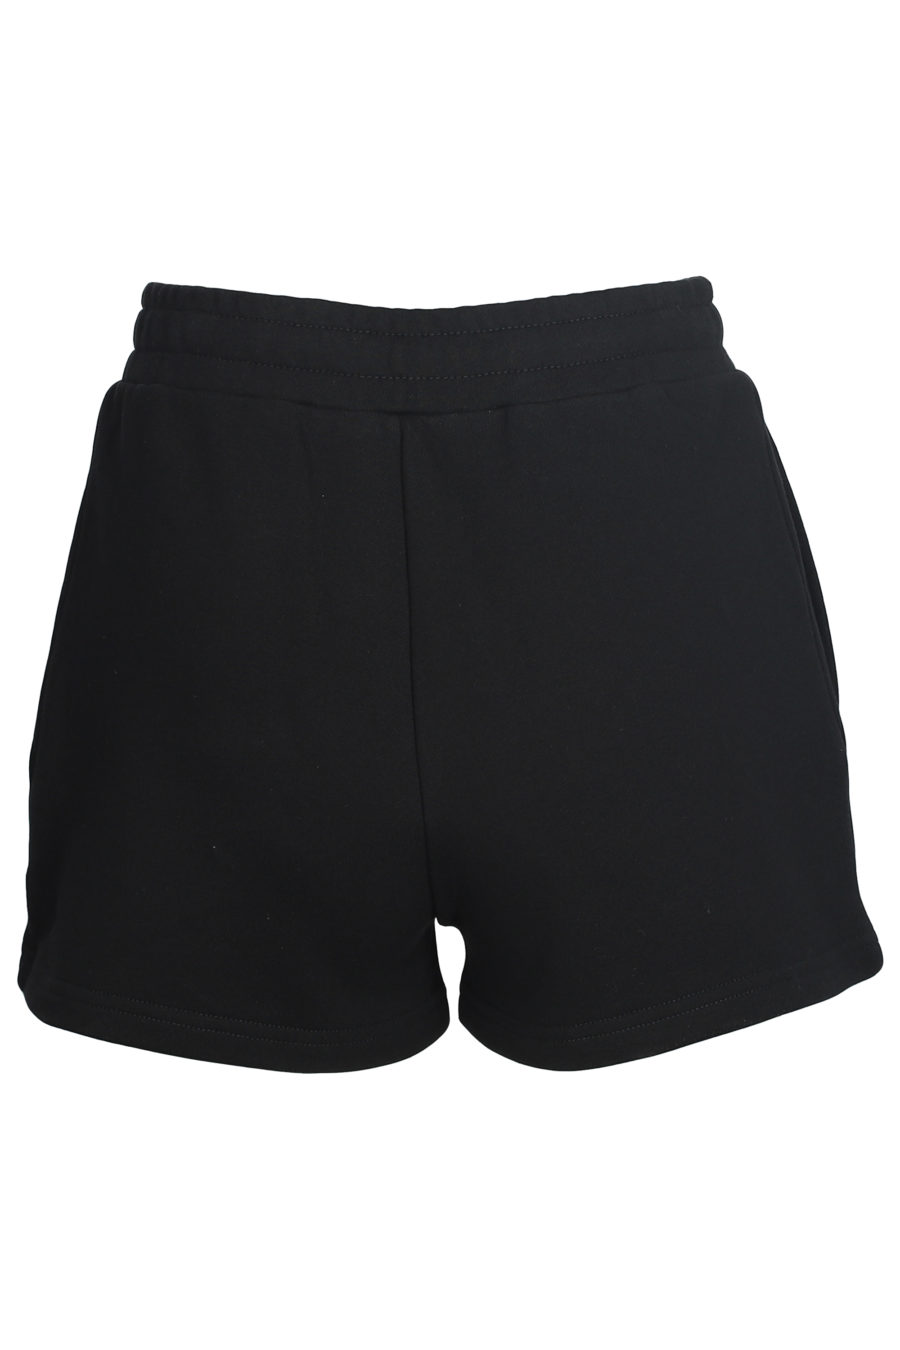 Schwarze Shorts mit Logo - IMG 5599